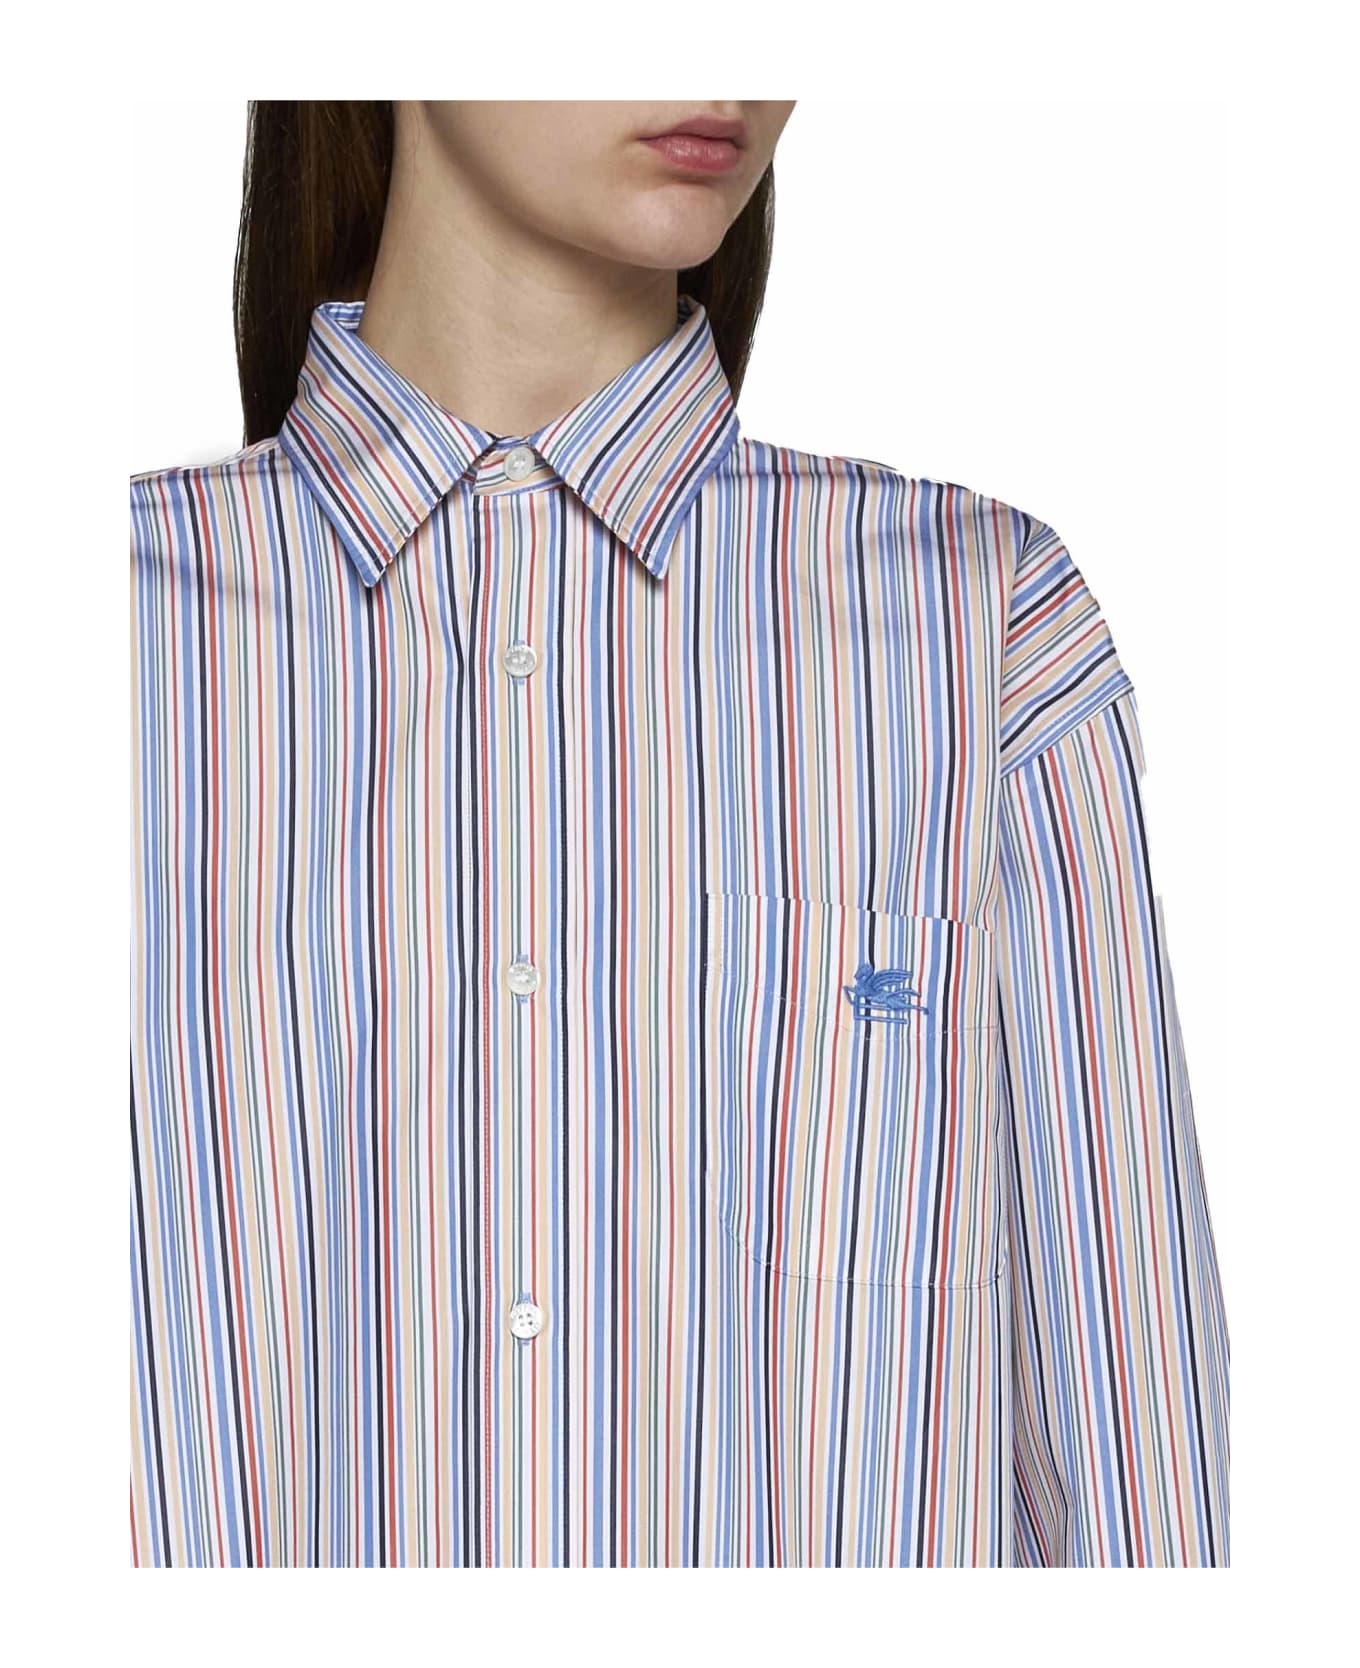 Etro Striped Button-up Shirt - Rigato シャツ